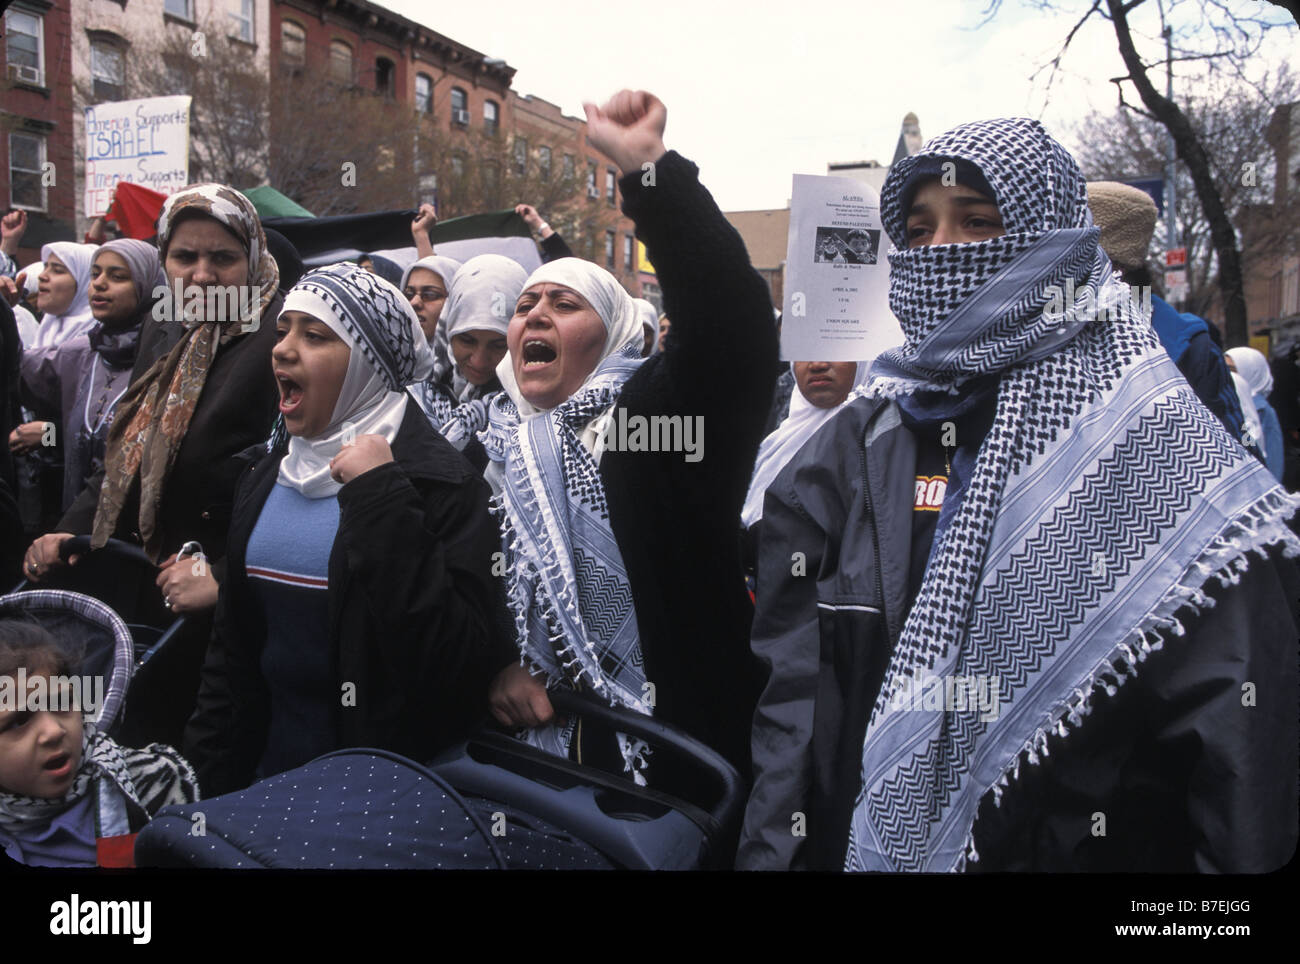 Palästinensische Amerikaner protestieren gegen die israelische Besatzung und Behandlung der Palästinenser an der Atlantic Avenue in Brooklyn, New York. Stockfoto